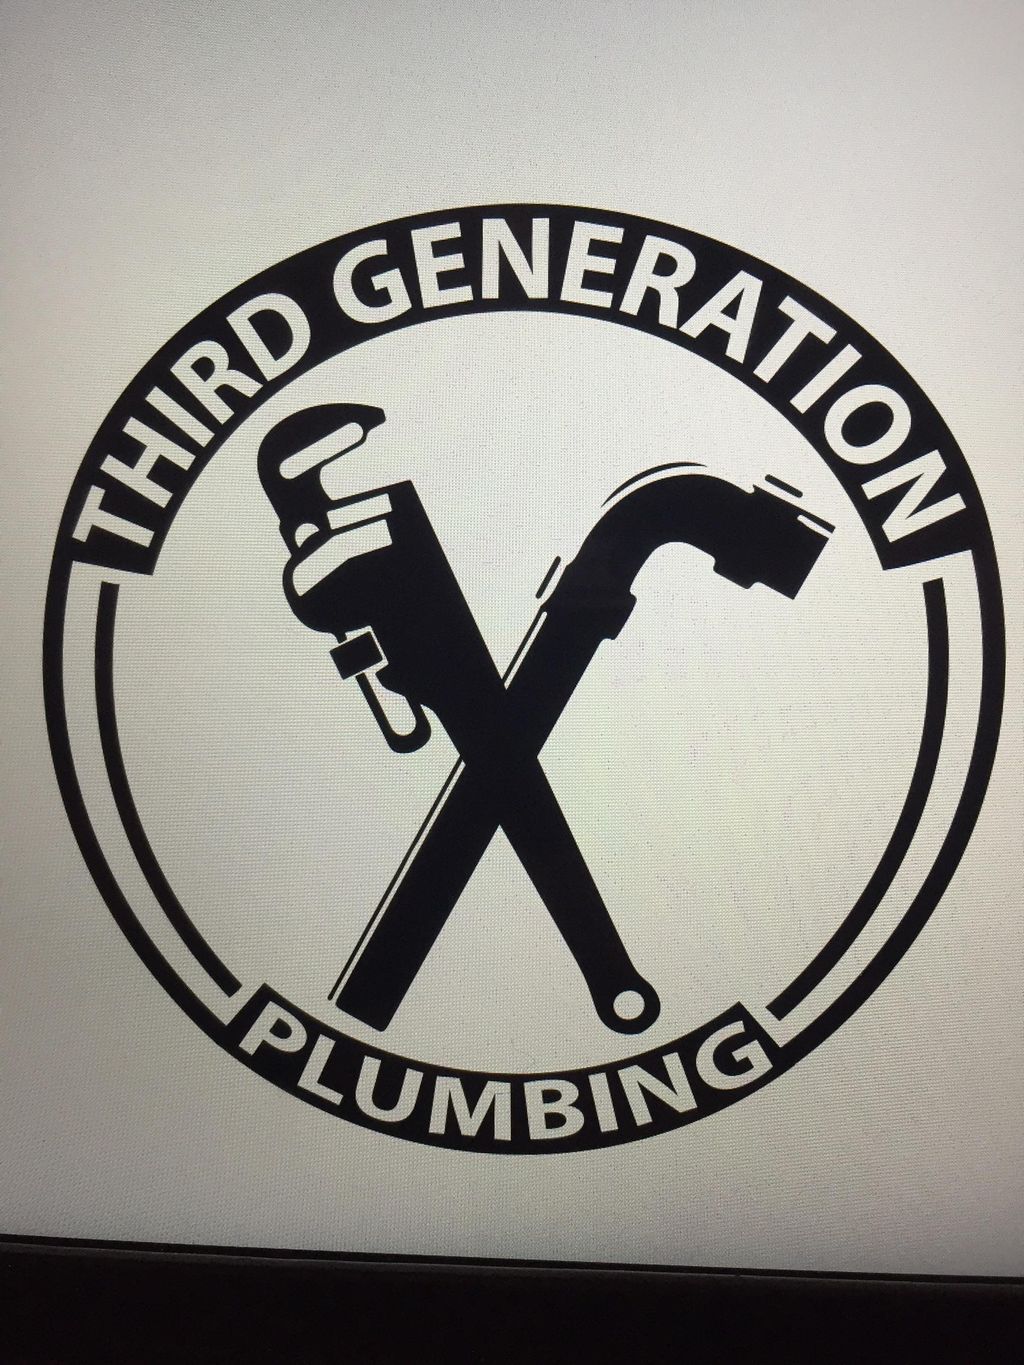 Third Generation Plumbing